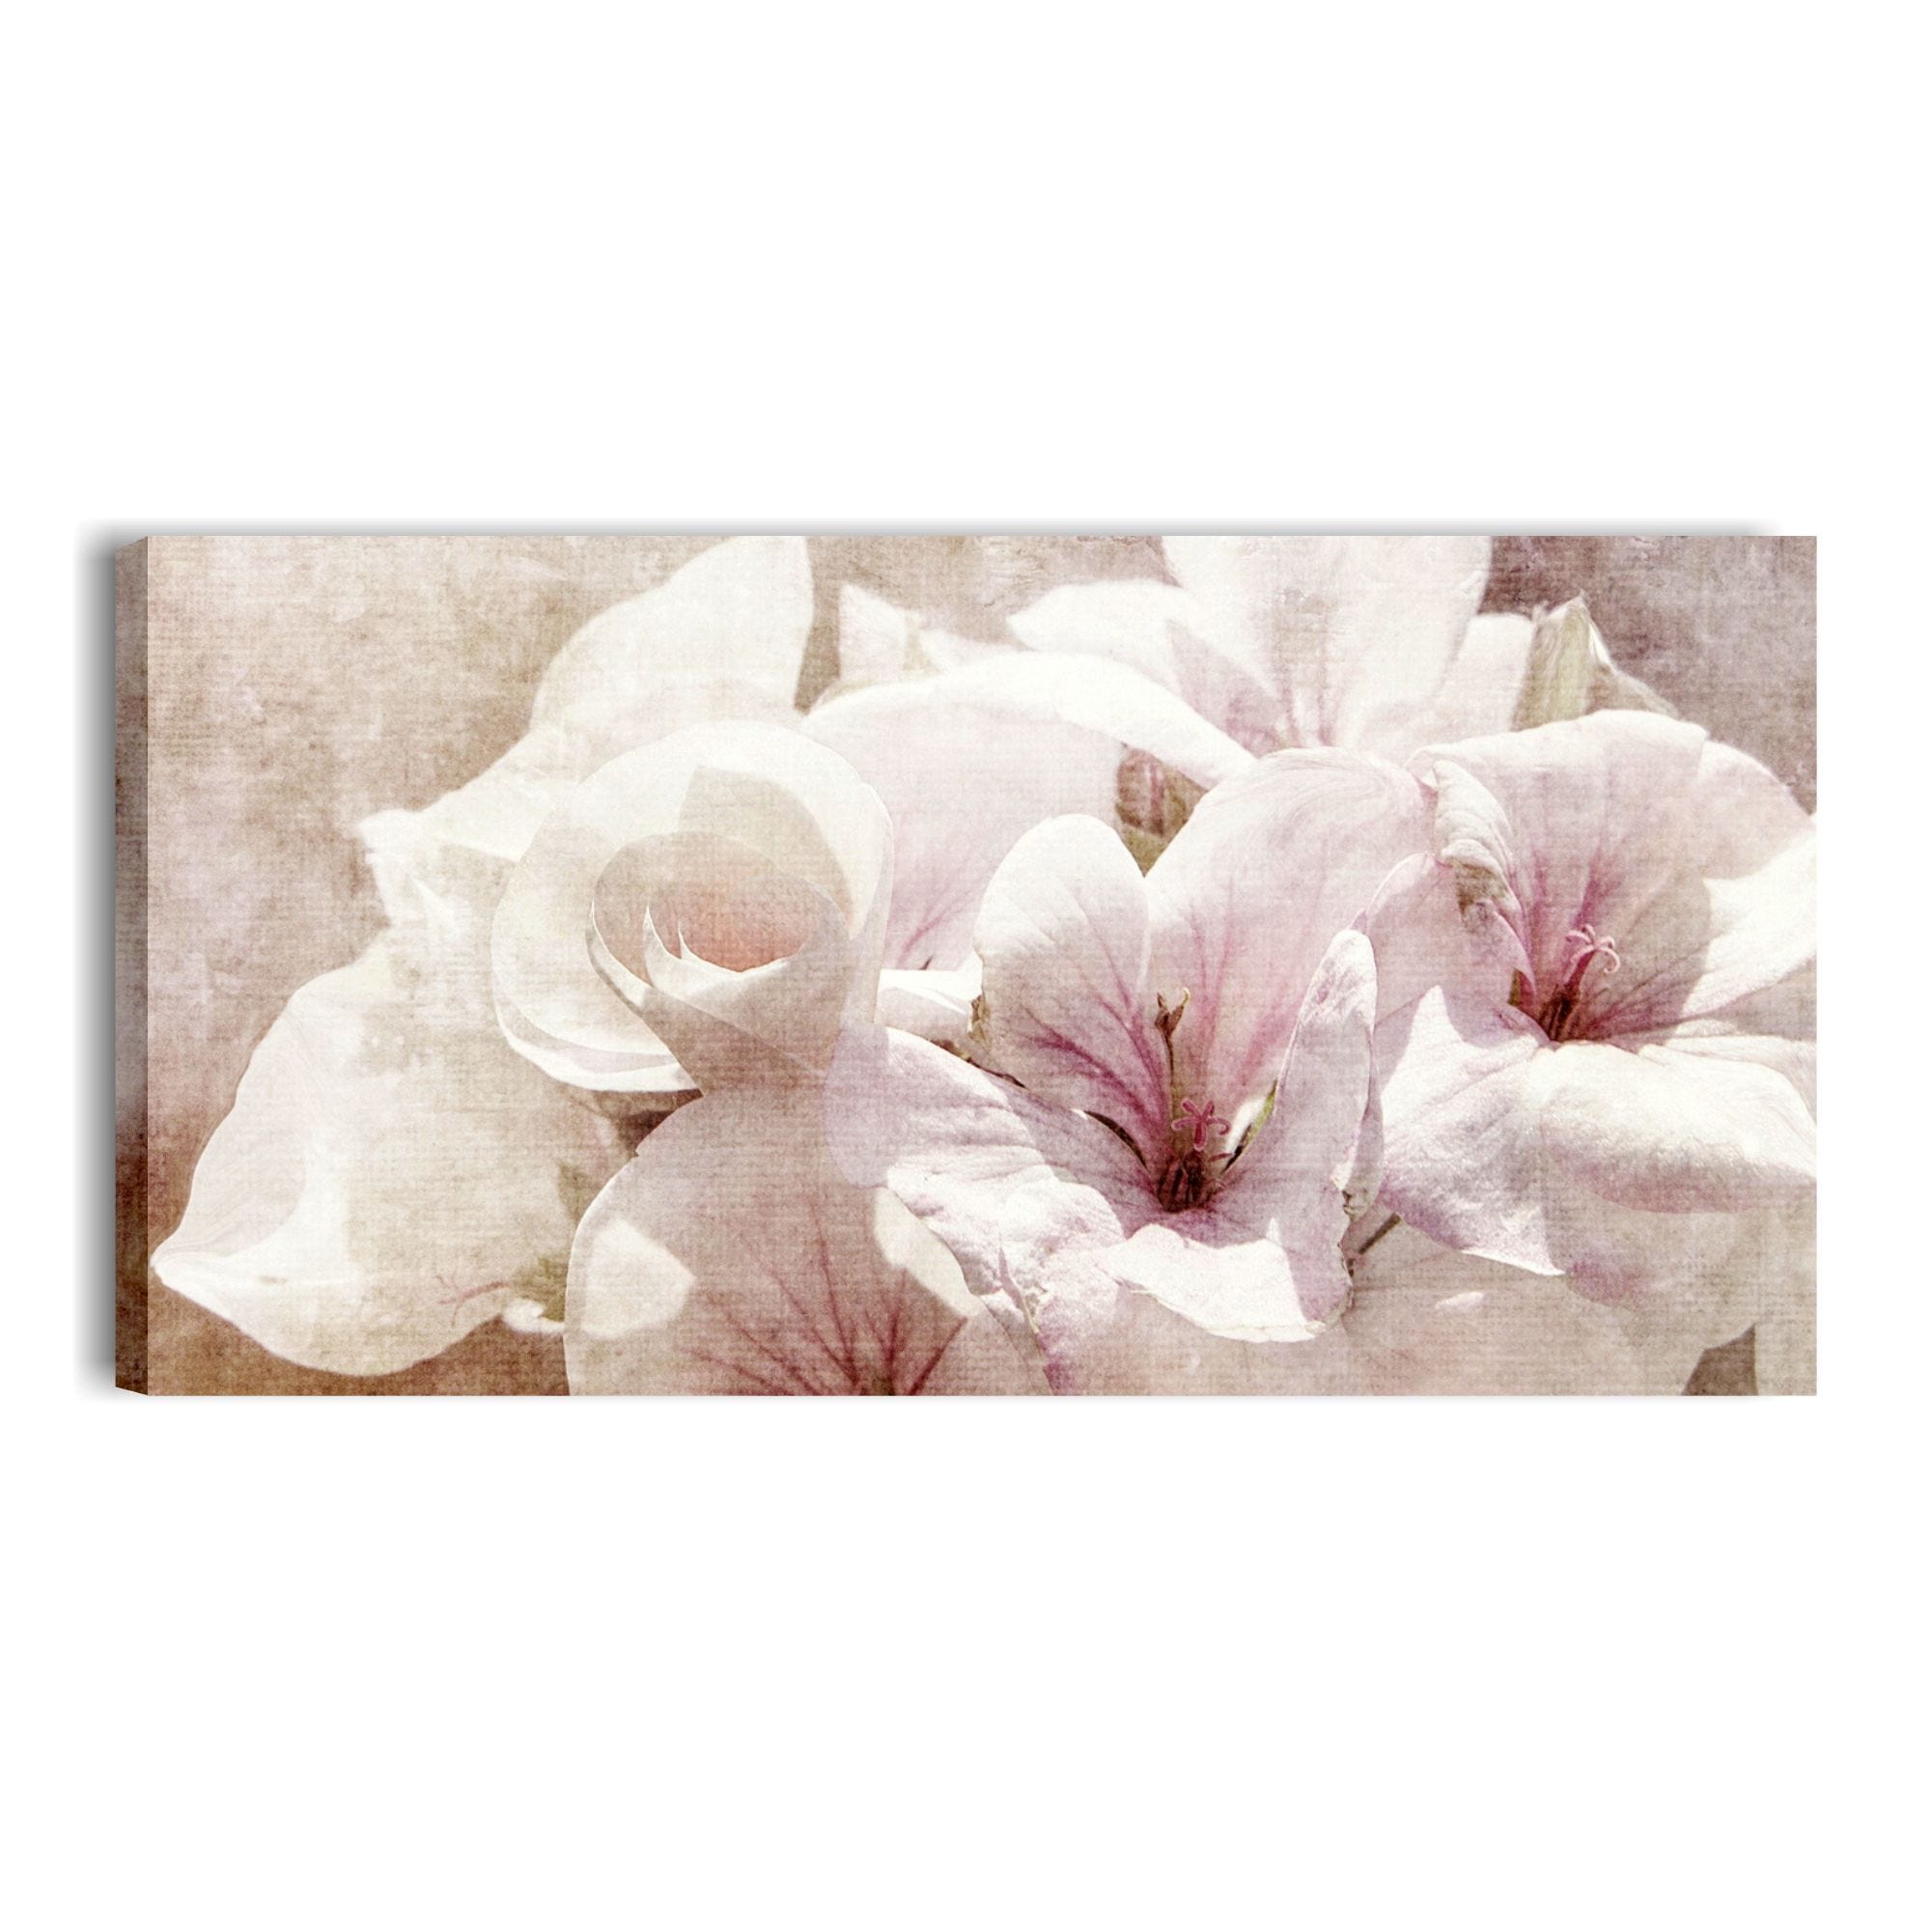 Fiori vintage 11 - Quadro moderno con fiori shabby chic 90 x 45 stampa su  tela per soggiorno camera da letto